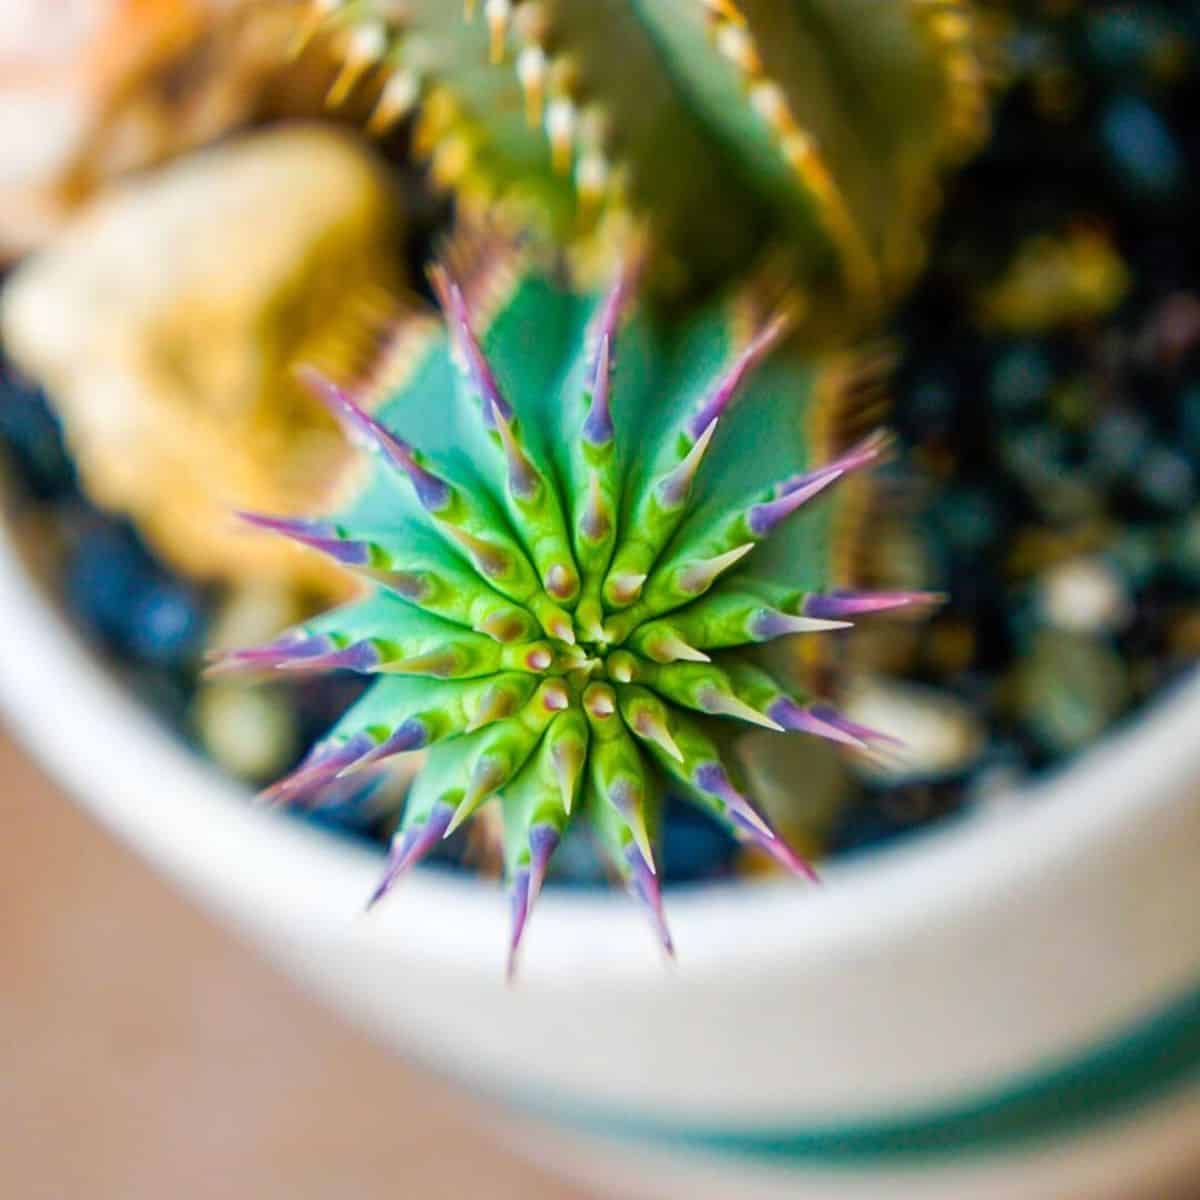 A close-up of a Hoodia grandis in a pot.